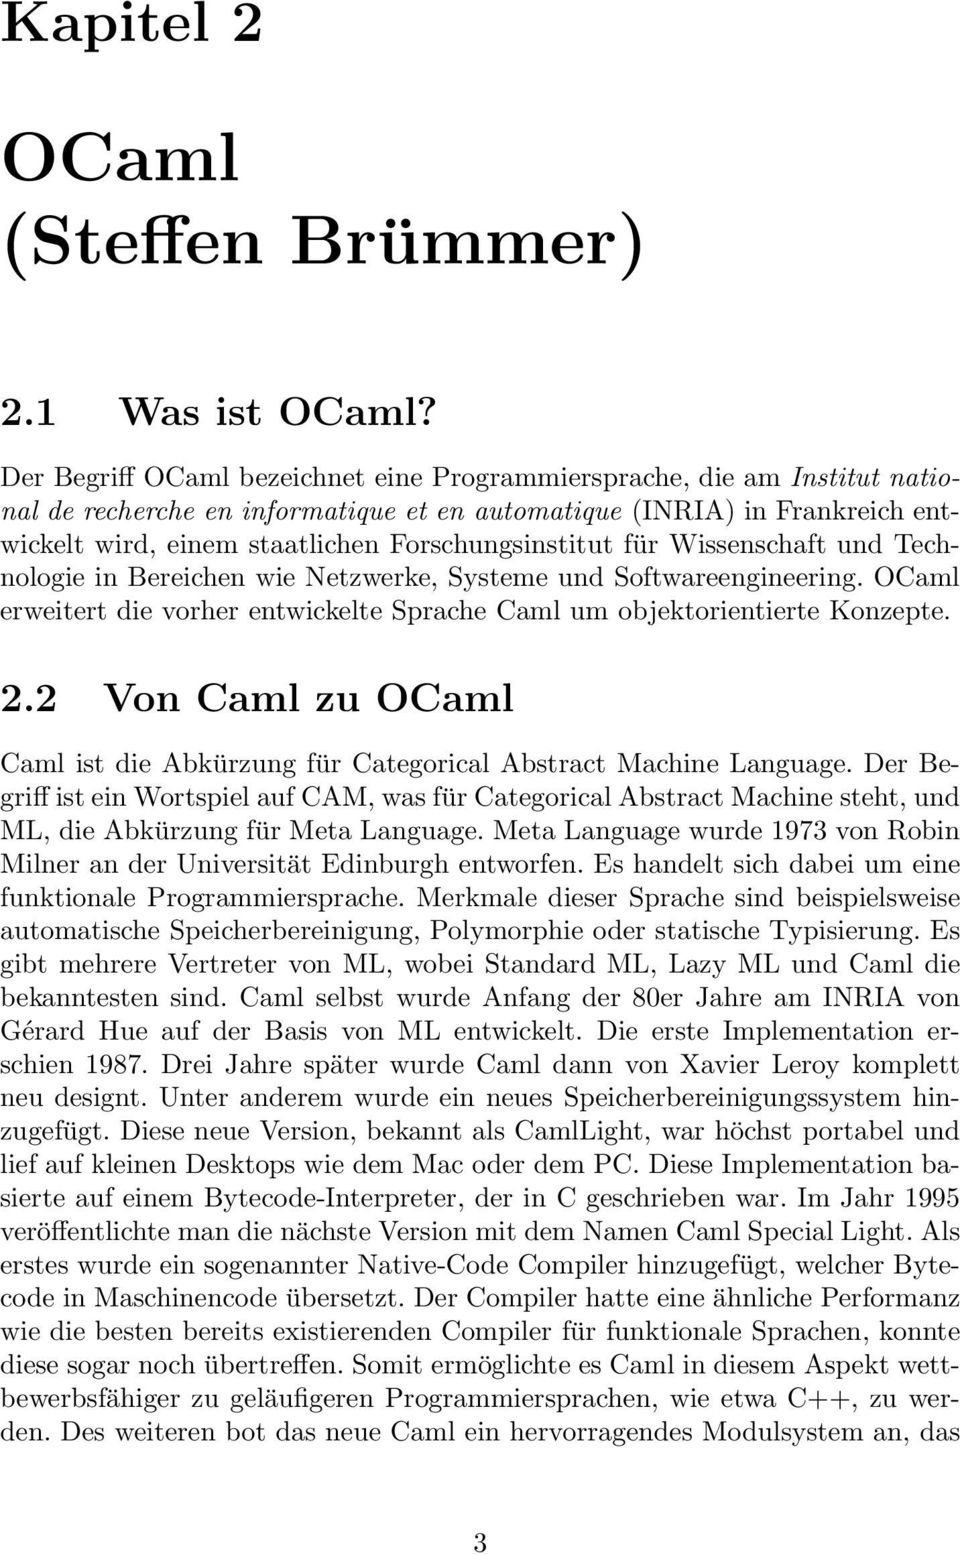 Forschungsinstitut für Wissenschaft und Technologie in Bereichen wie Netzwerke, Systeme und Softwareengineering. OCaml erweitert die vorher entwickelte Sprache Caml um objektorientierte Konzepte. 2.